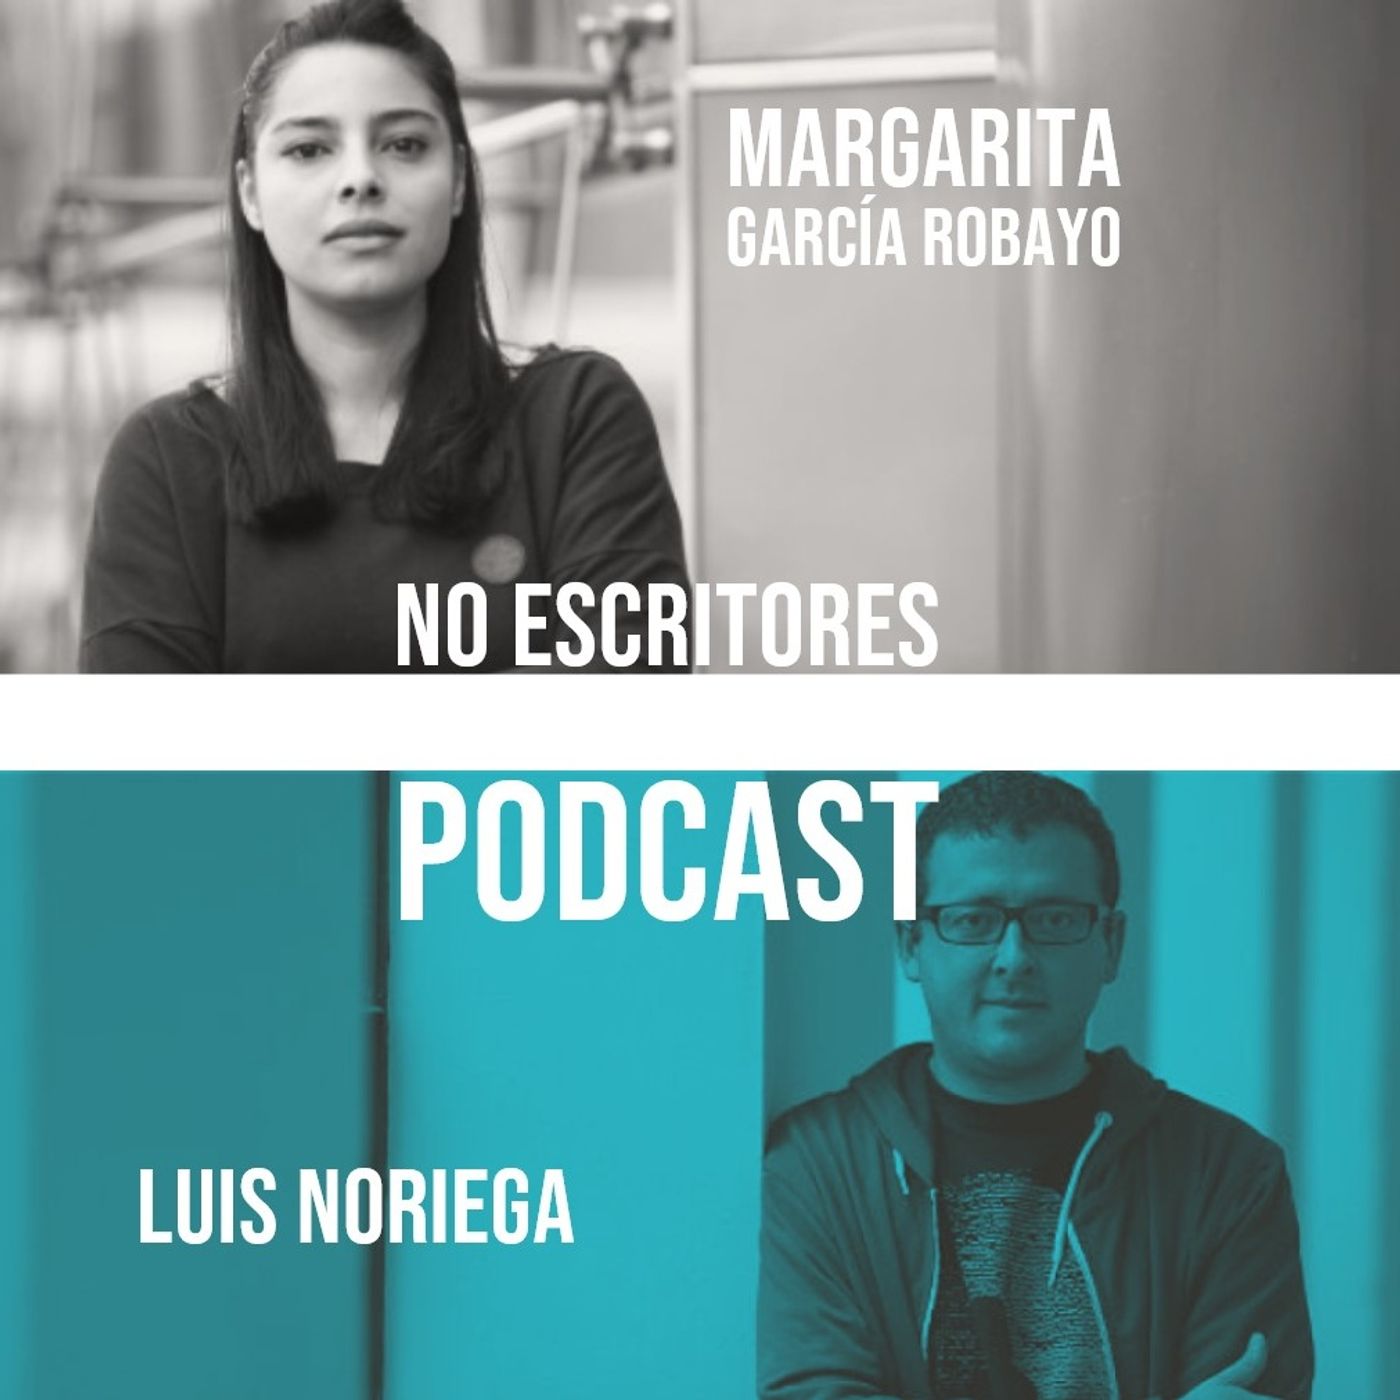 Los No Escritores leen: Margarita García Robayo y Luis Noriega